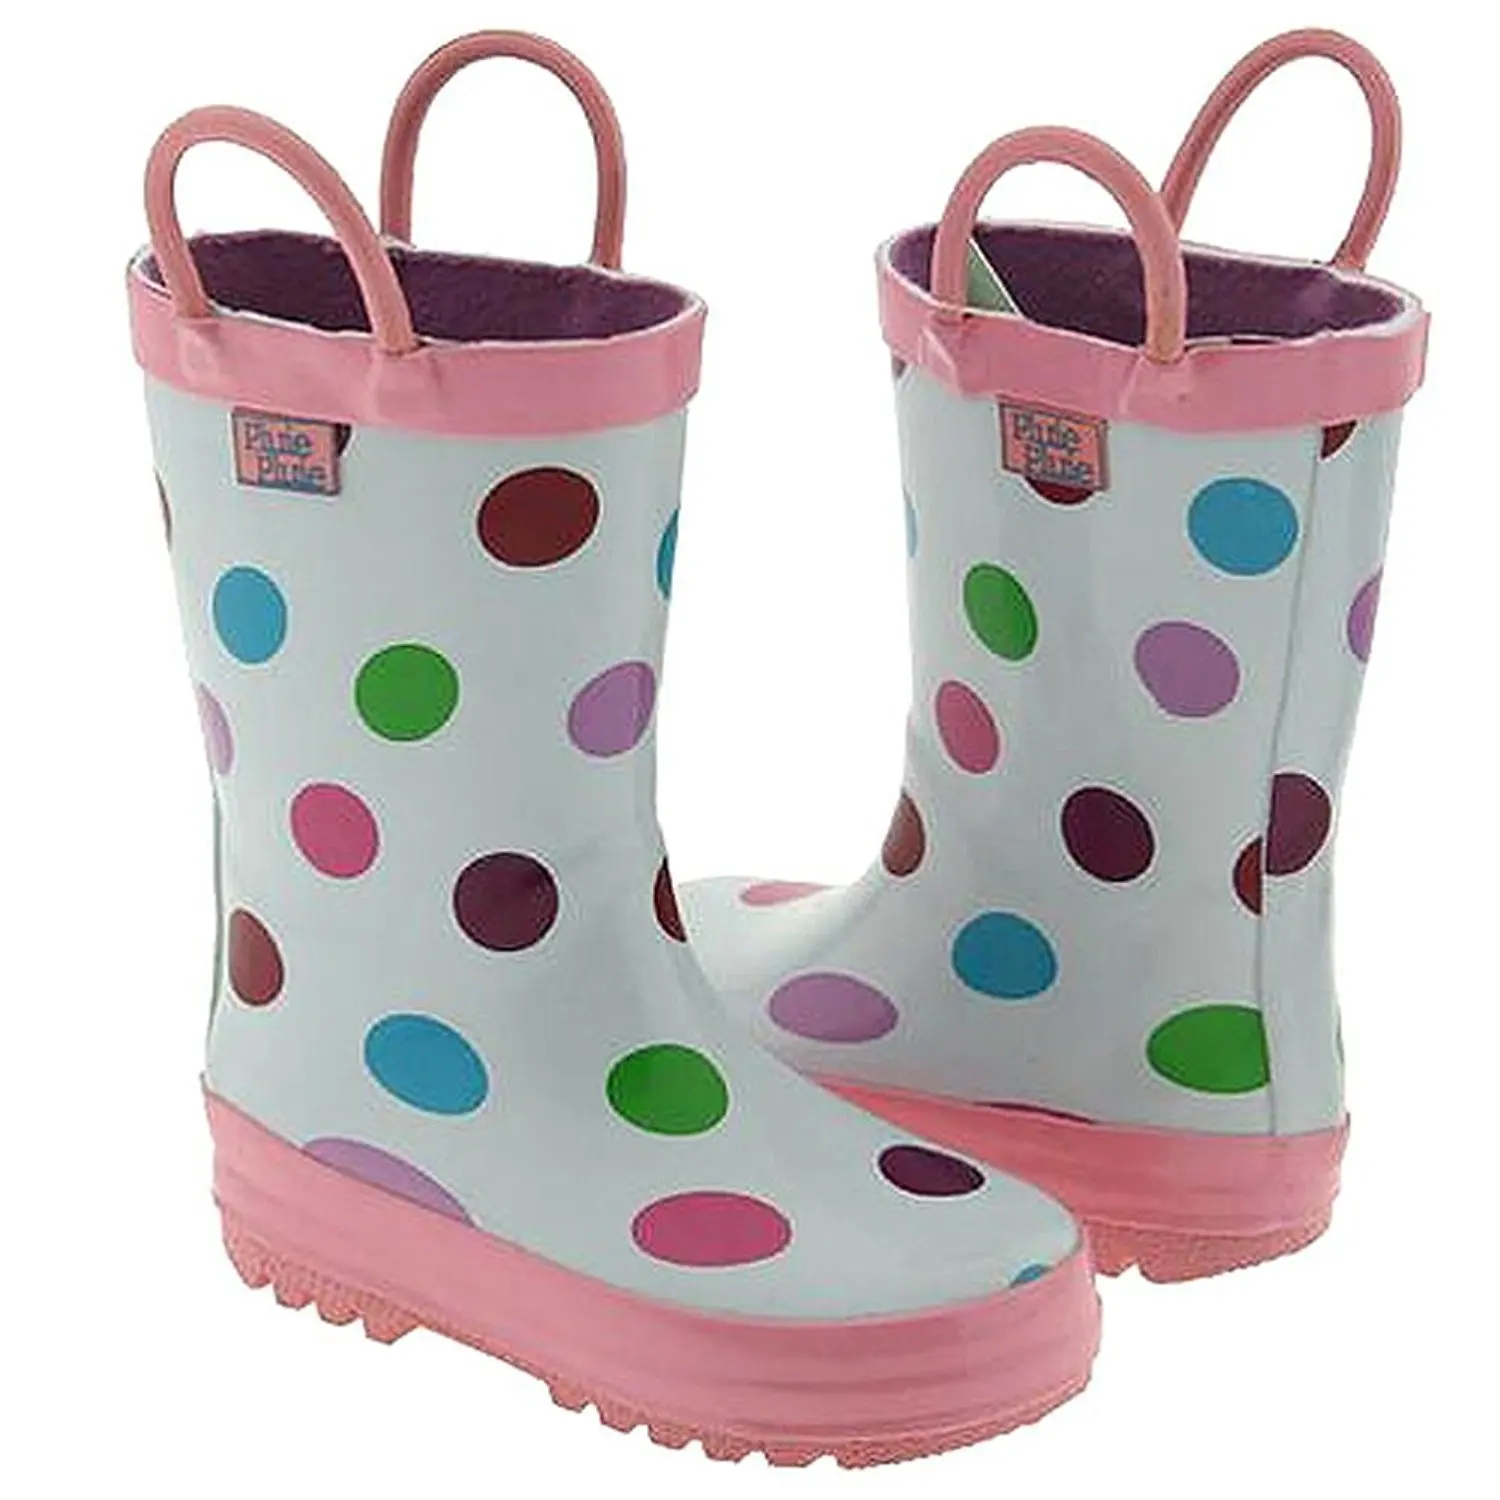 girls size 5 rain boots